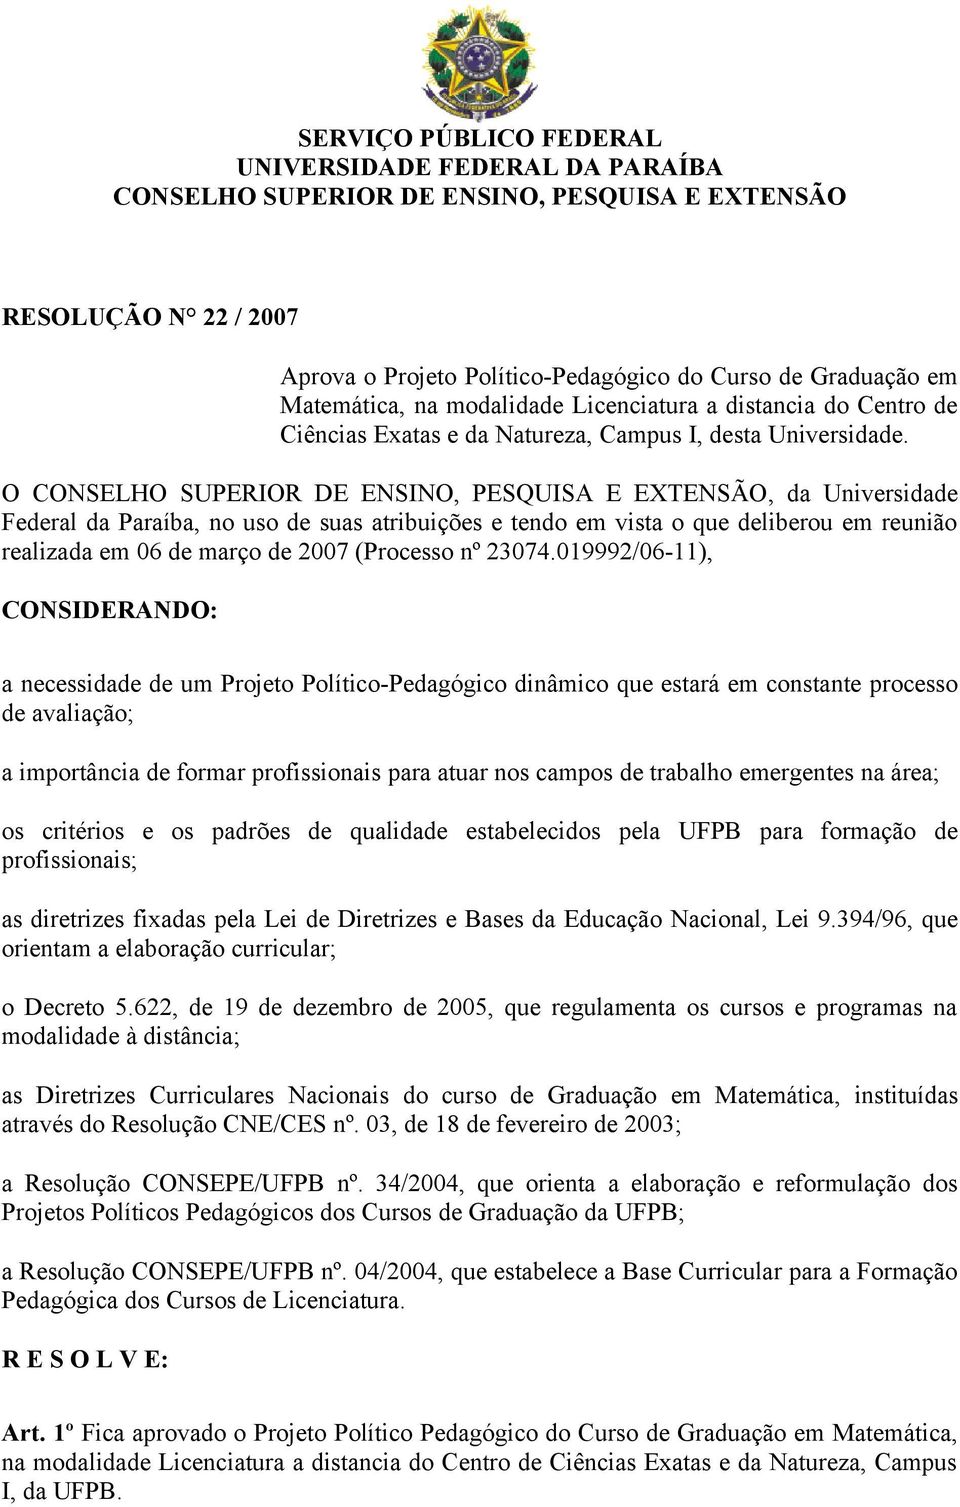 O CONSELHO SUPERIOR DE ENSINO, PESQUISA E EXTENSÃO, da Universidade Federal da Paraíba, no uso de suas atribuições e tendo em vista o que deliberou em reunião realizada em 06 de março de 2007